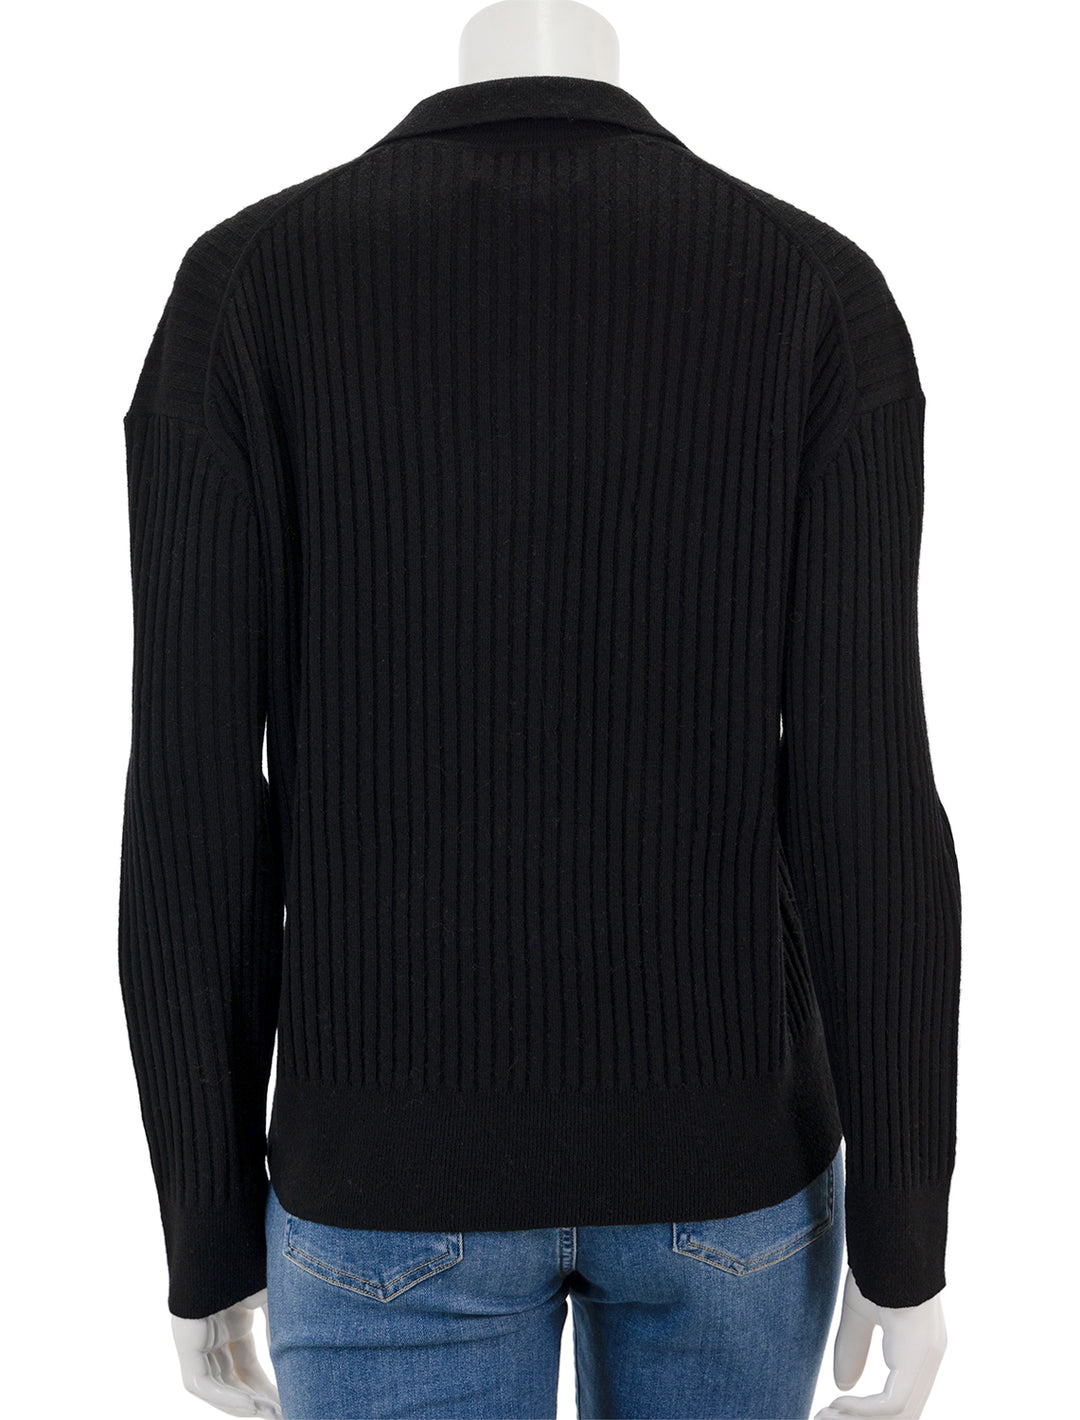 Back view of Nili Lotan's ramona polo sweater in black.